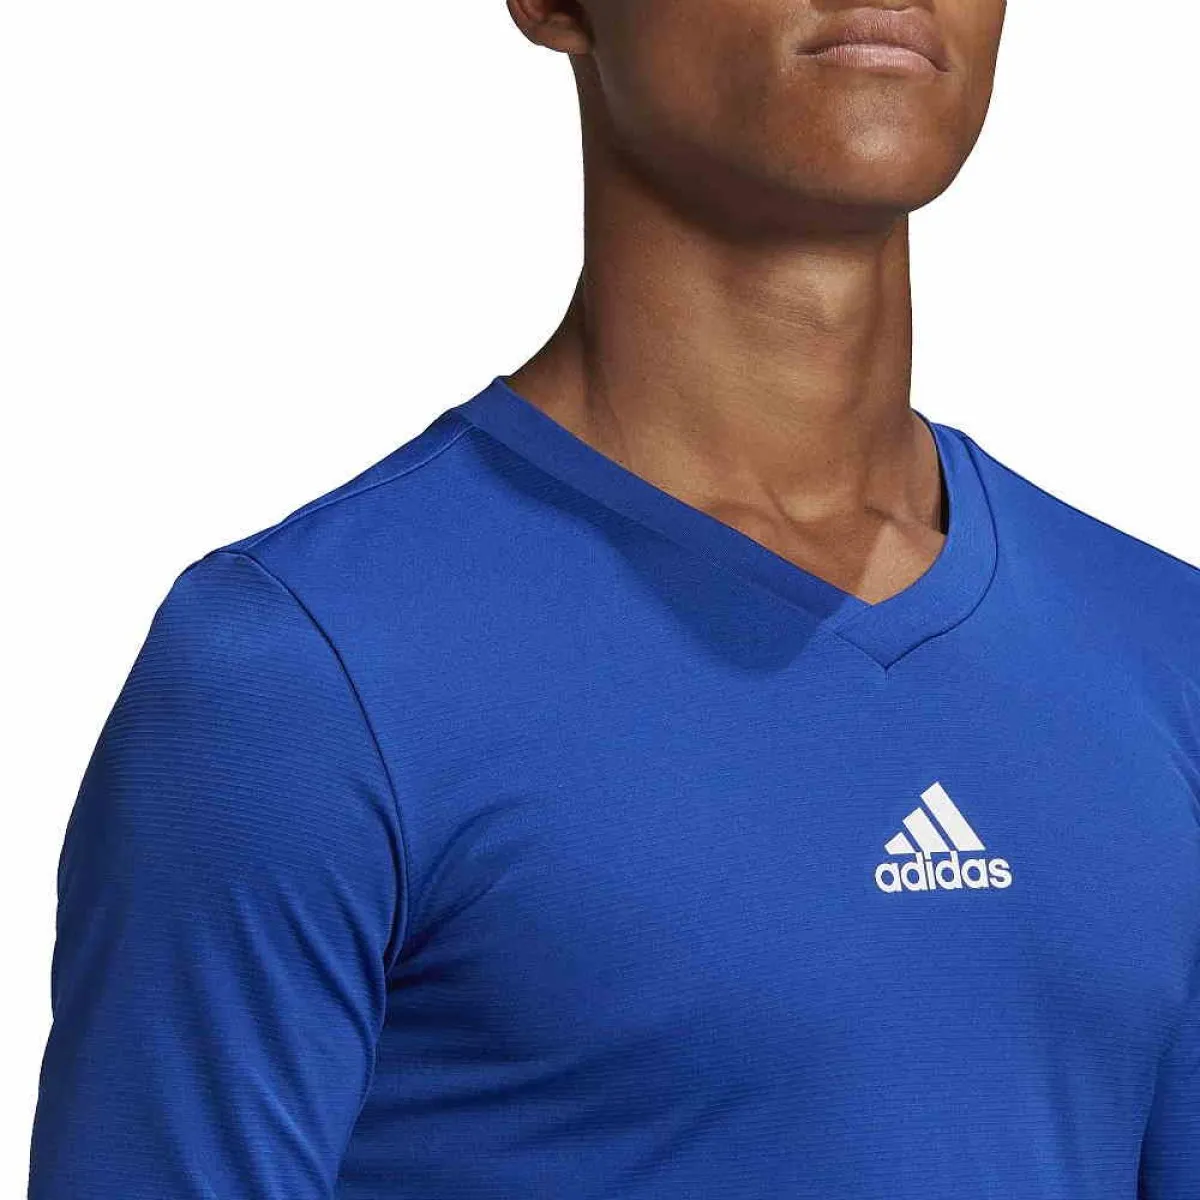 adidas T-Shirt langarm Team Base royal blau 13-ADIGK9088